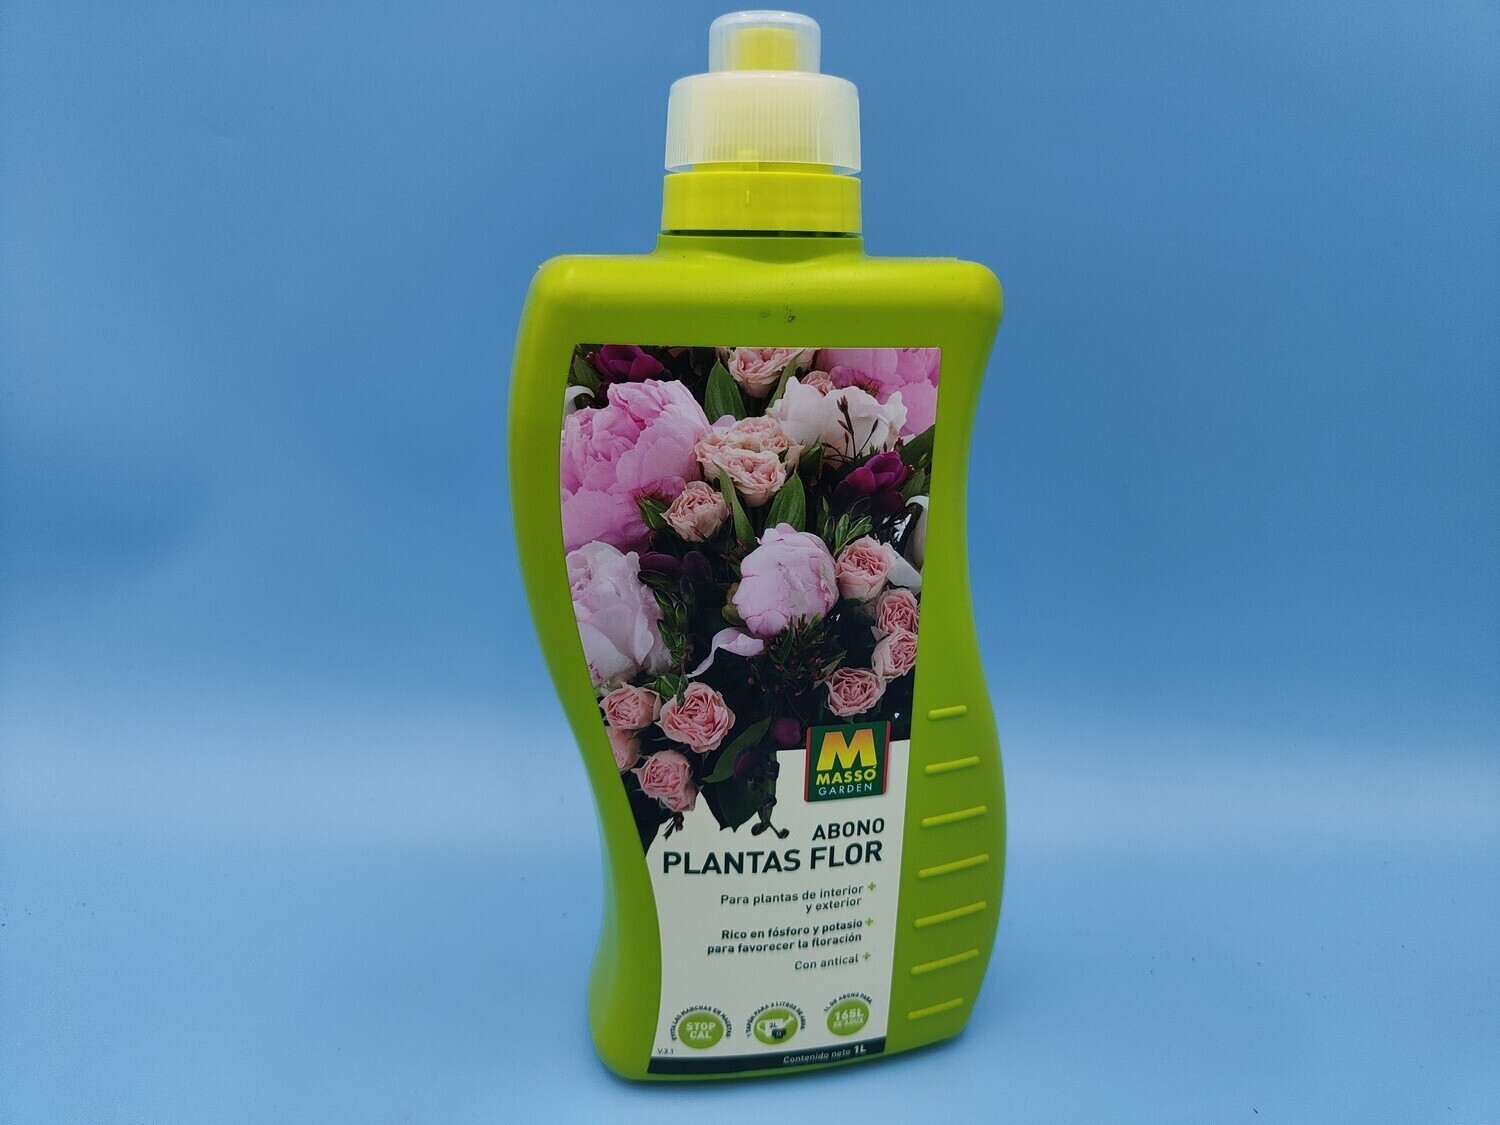 "AmaPlant 3 envases Abono Plantas Flor" liquido para plantas de interior y exterior, rico en fósforo y potasio para favorecer la floracion  3x1 litros - ENVIO INCLUIDO